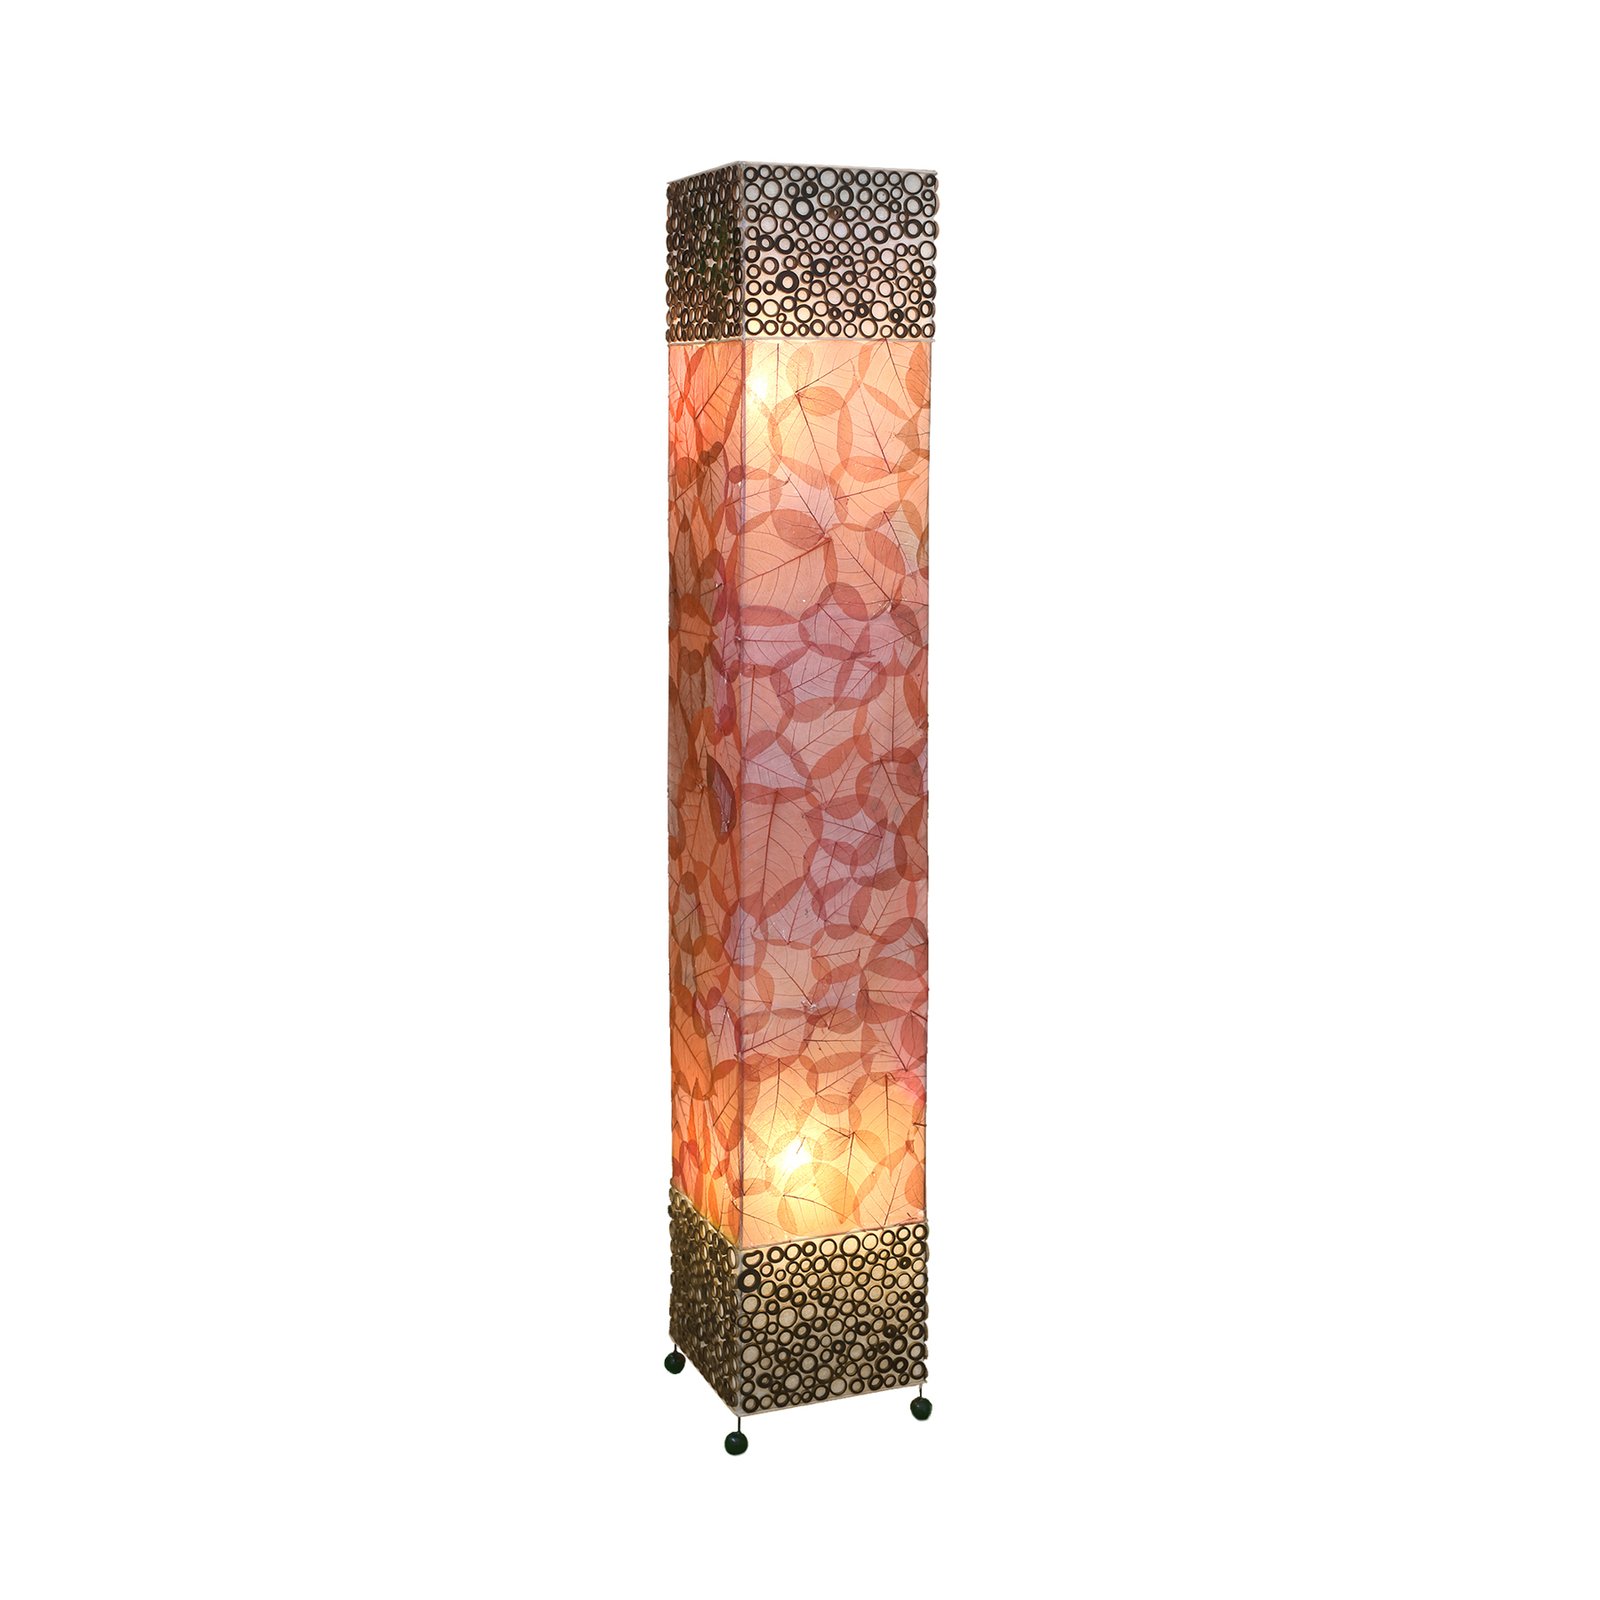 Lampa stojąca Emilian z motywem liści, wysokość 150 cm